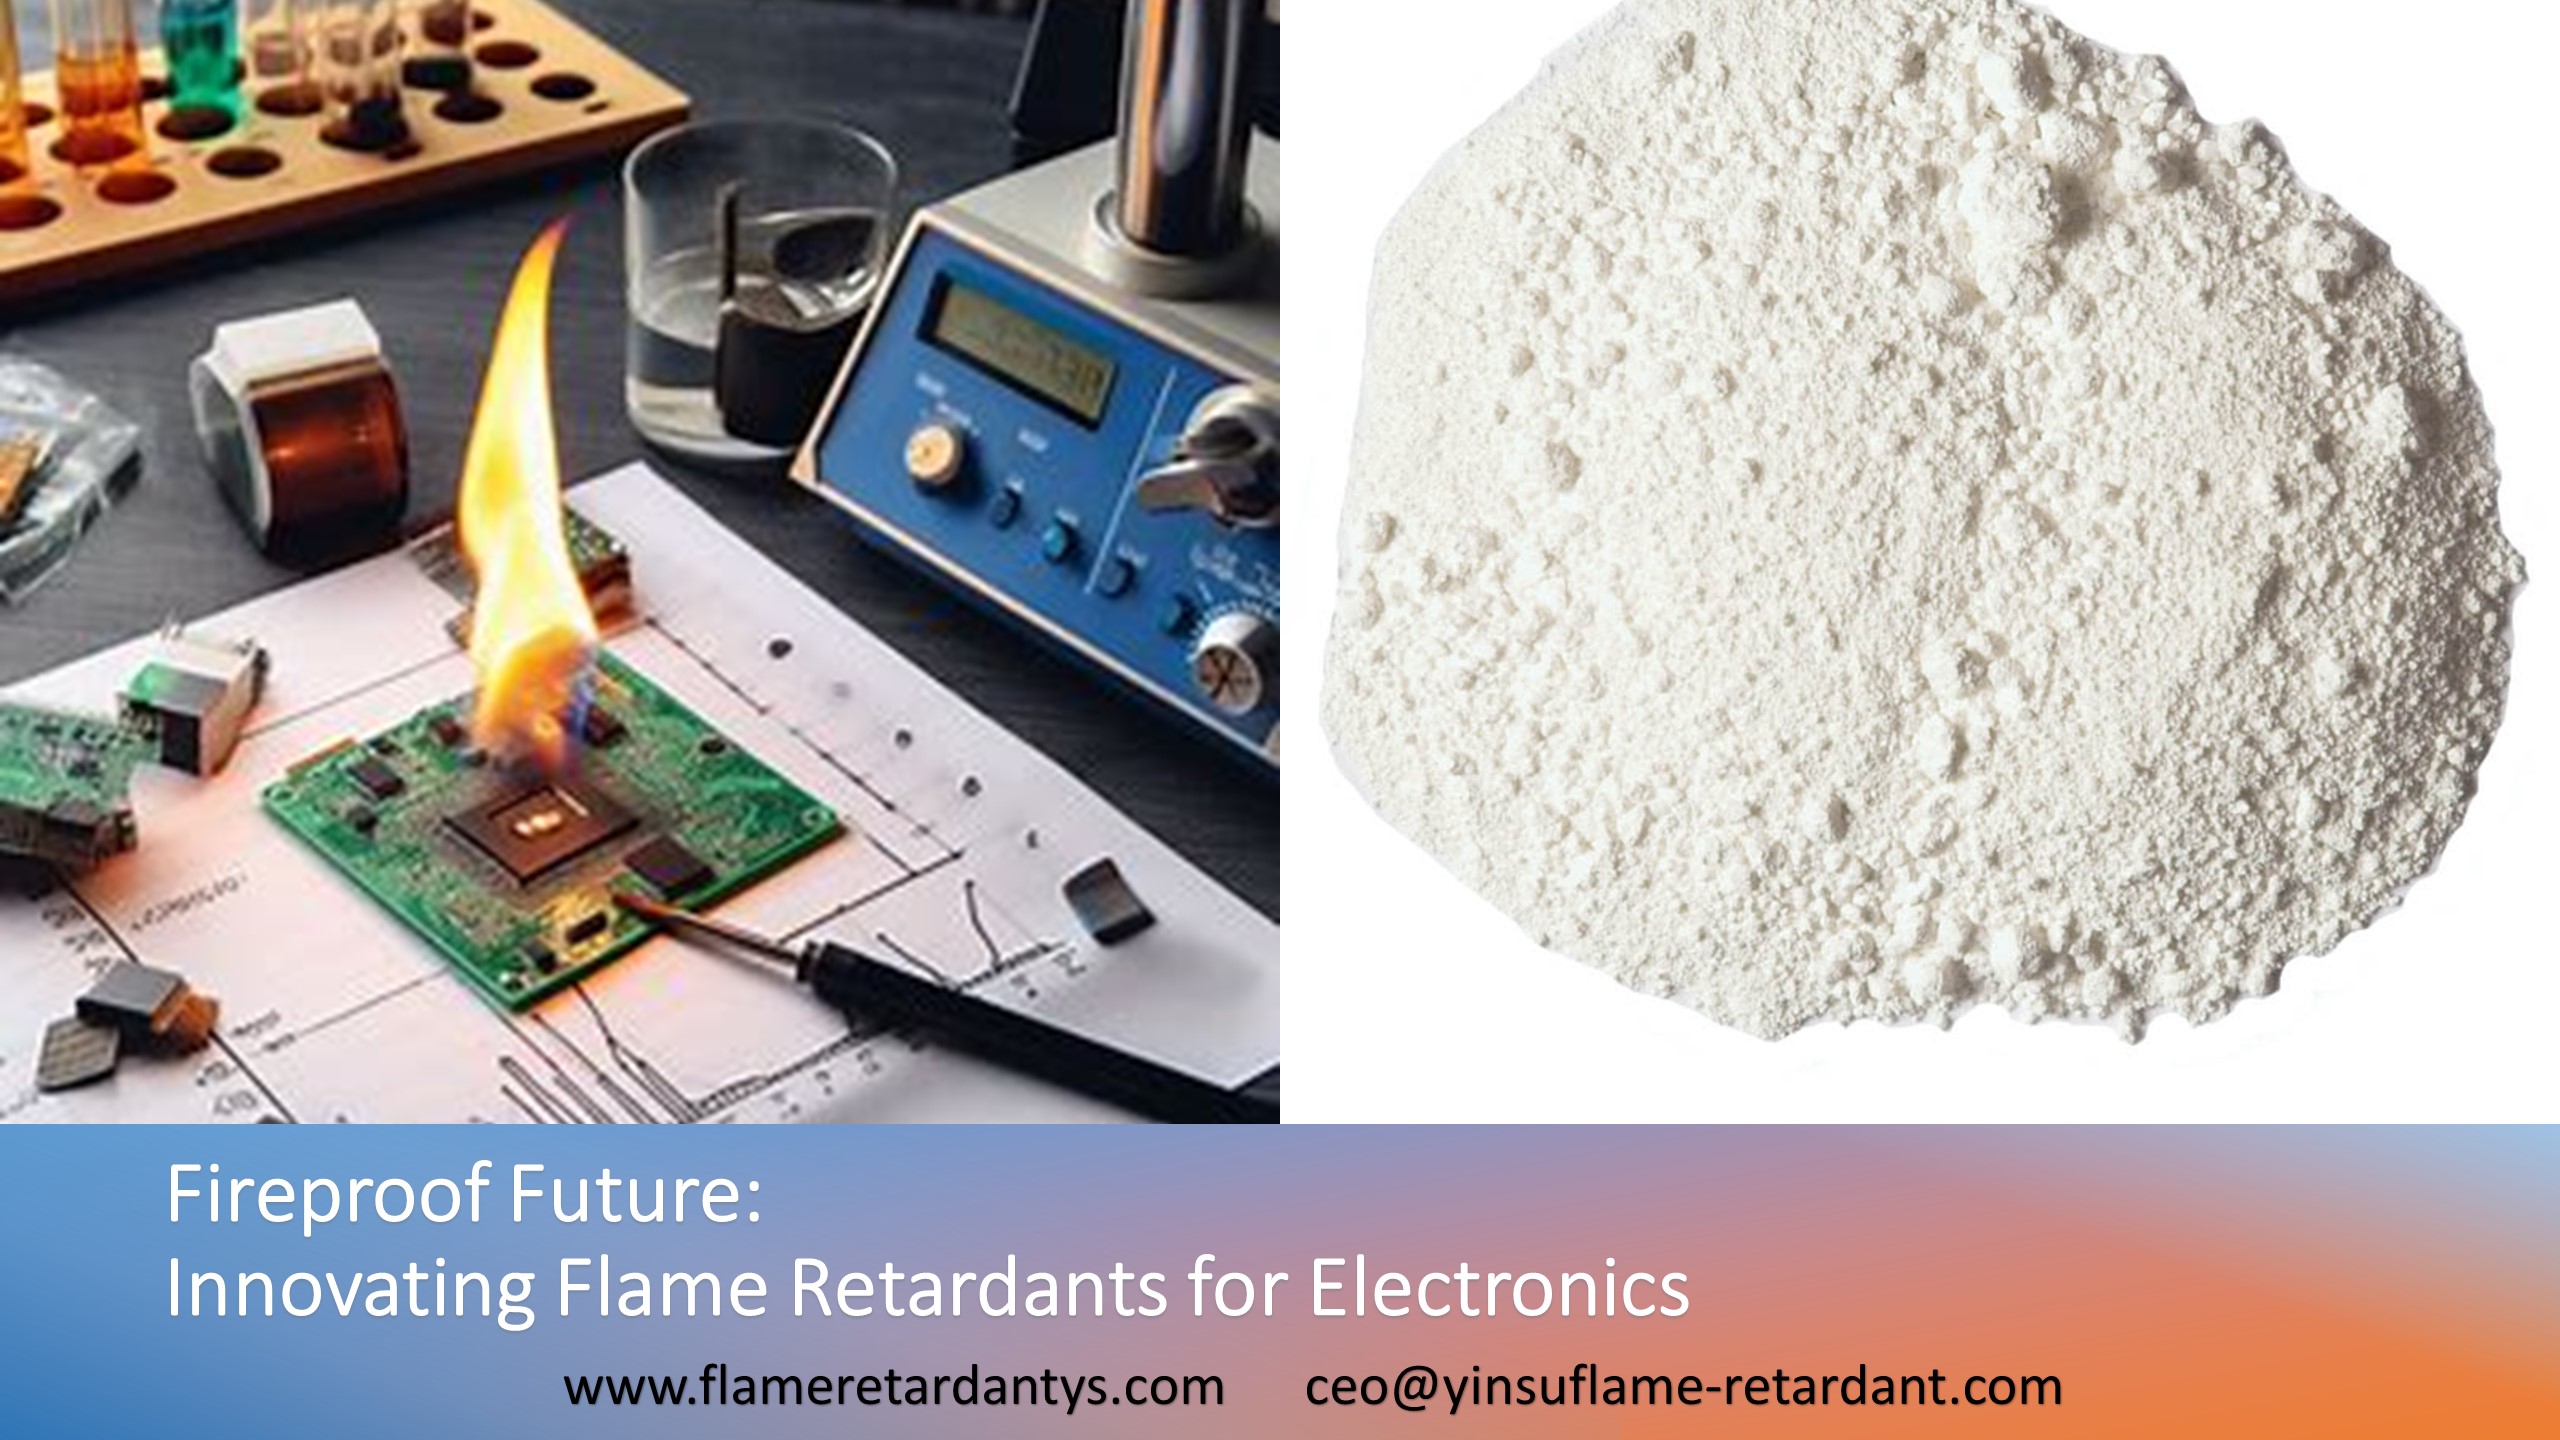 Feuerfeste Zukunft: Innovative Flammschutzmittel für die Elektronik